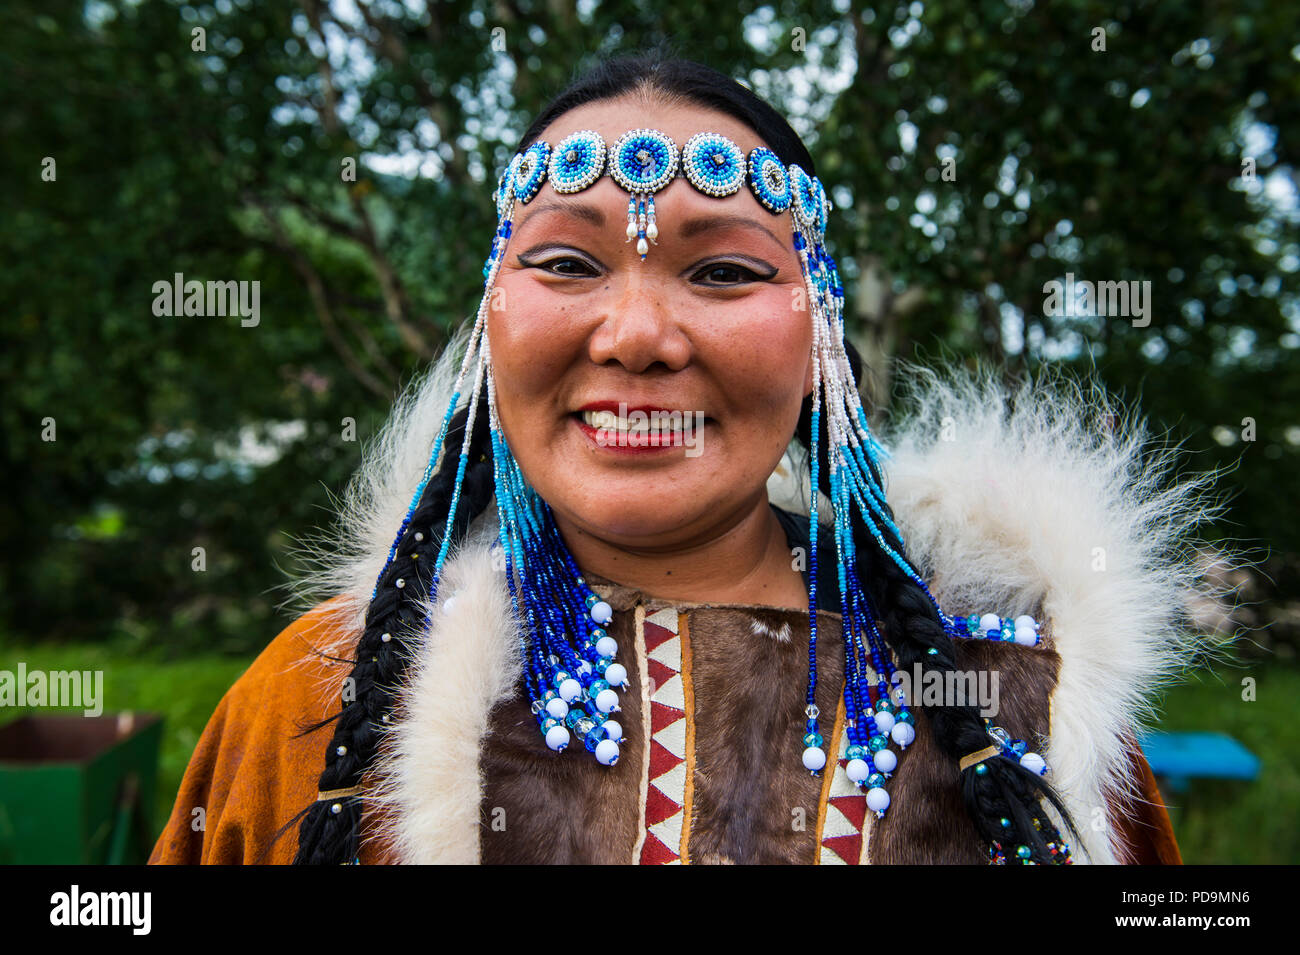 Traditionell gekleidet - Korjaken Frau, Ureinwohner Kamtschatkas, Esso, Kamtschatka, Russland Stockfoto